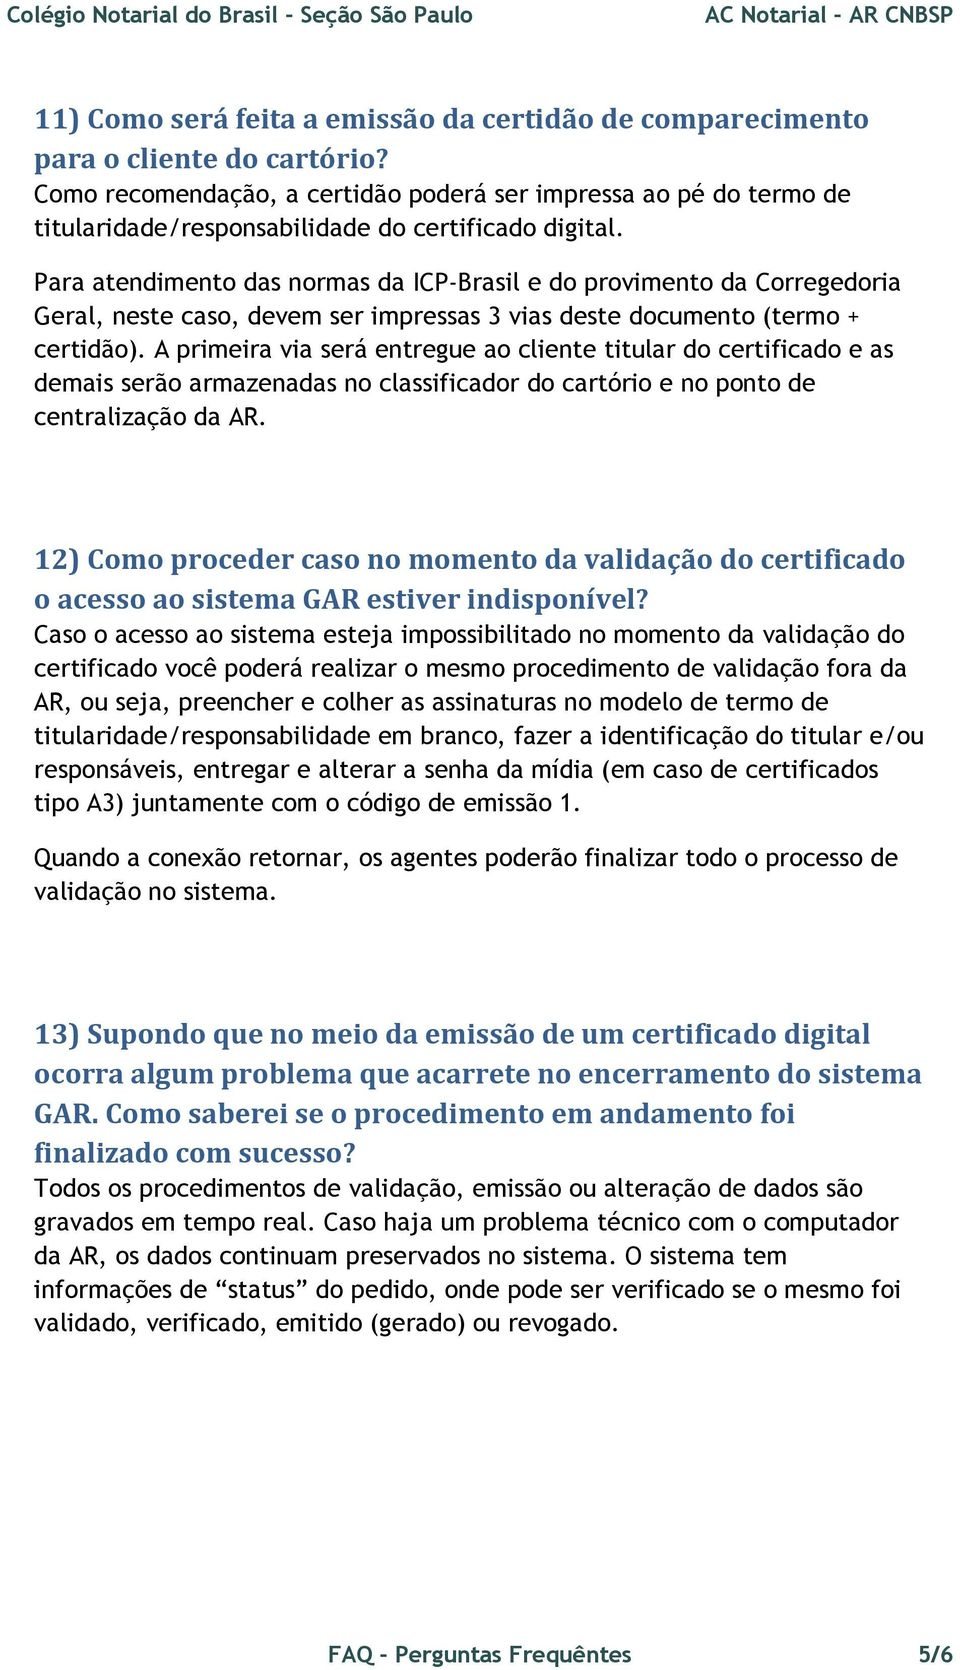 Para atendimento das normas da ICP-Brasil e do provimento da Corregedoria Geral, neste caso, devem ser impressas 3 vias deste documento (termo + certidão).